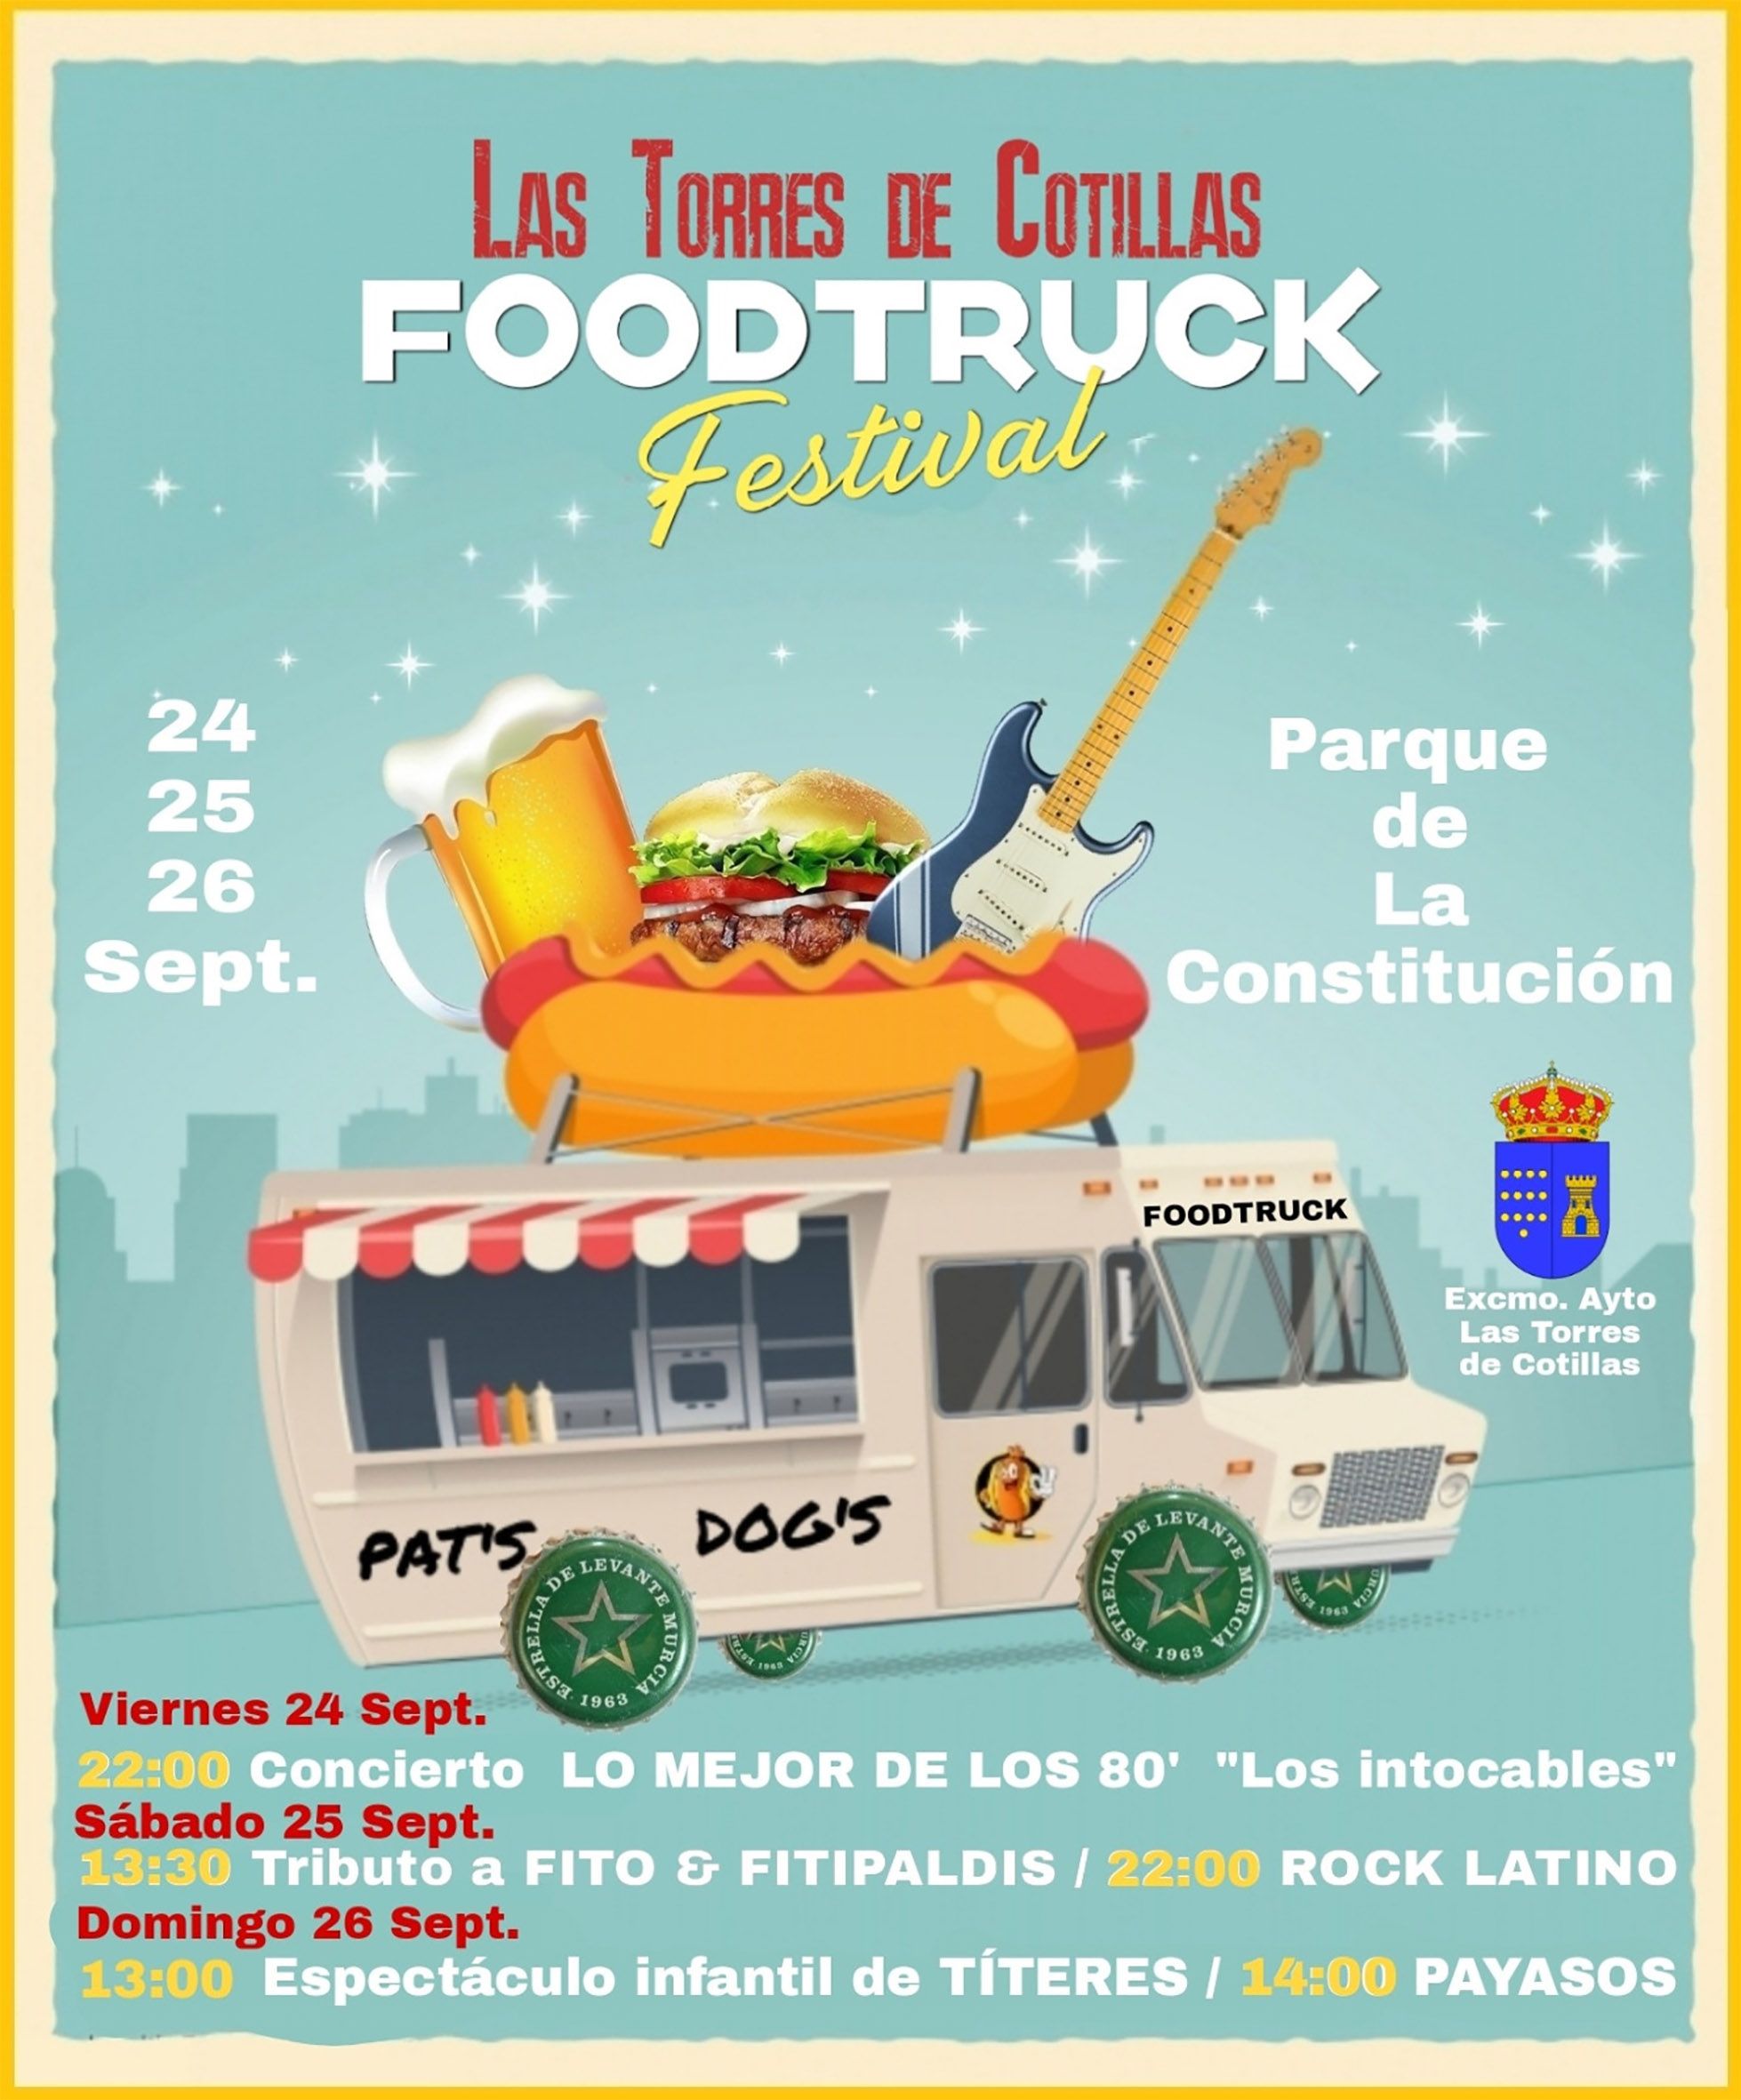 Las Torres de Cotillas FoodTruck Festival